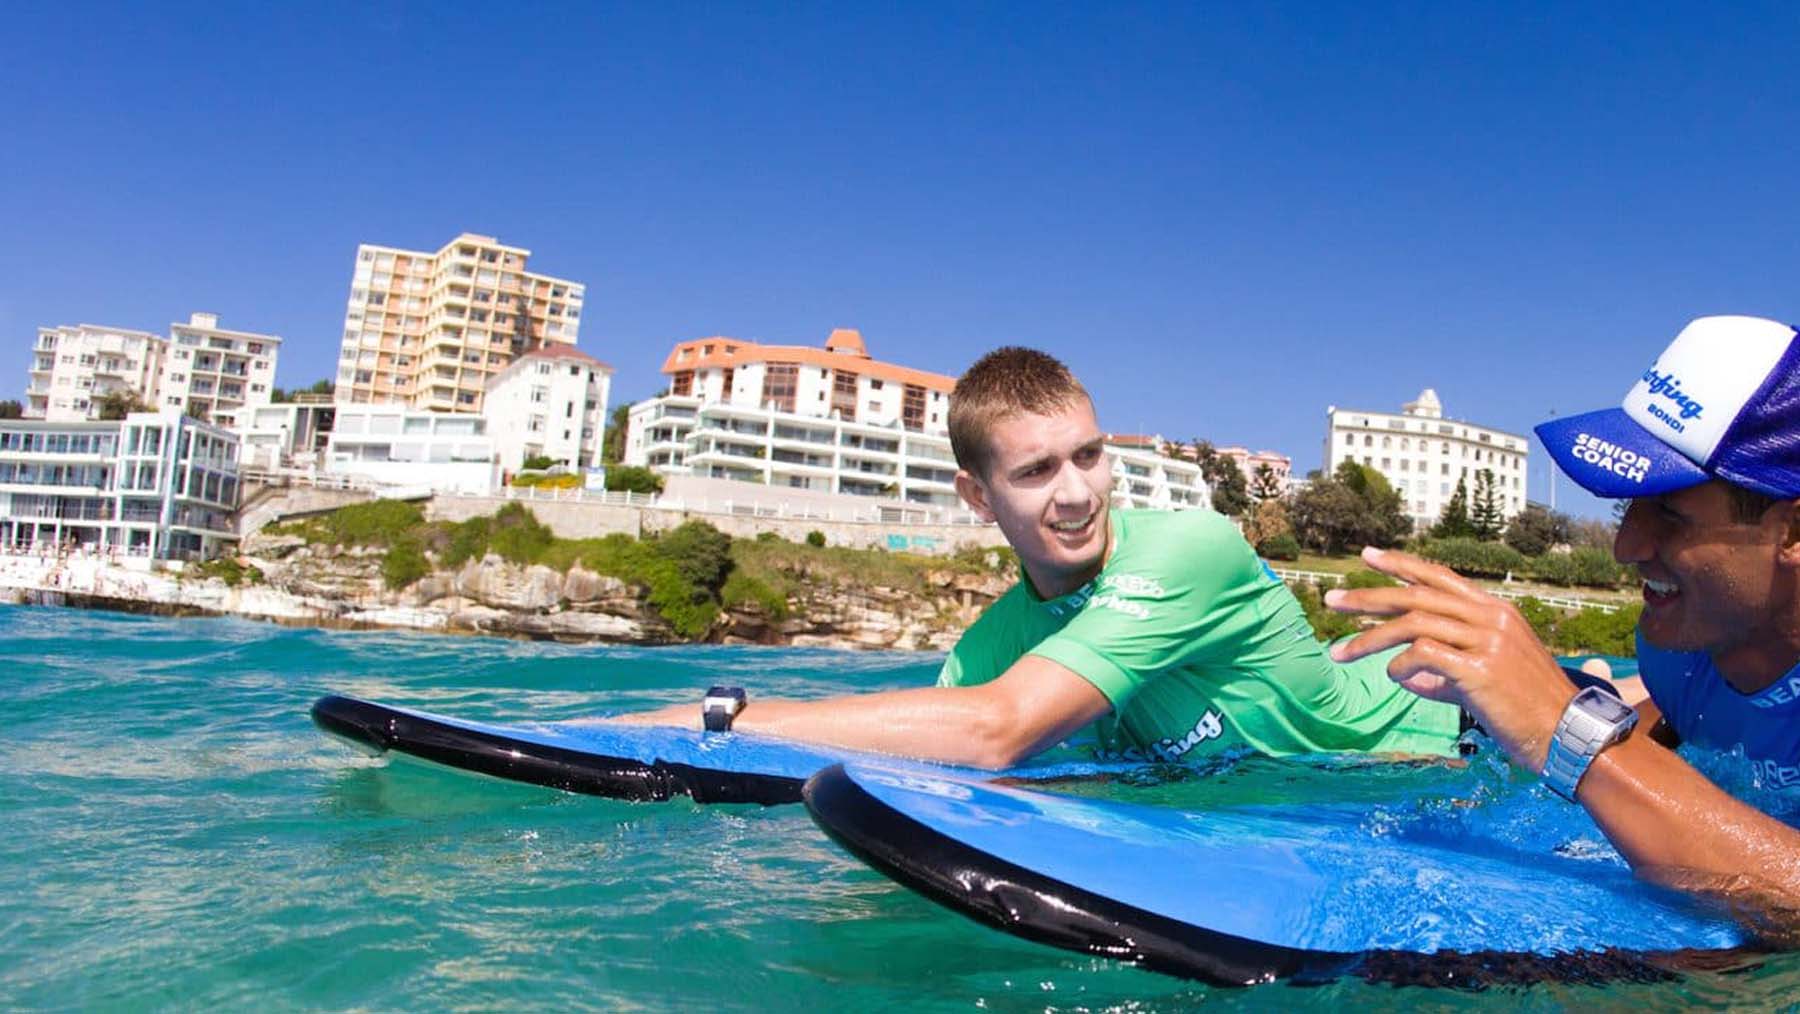 Surfing lesson in Bondi Beach